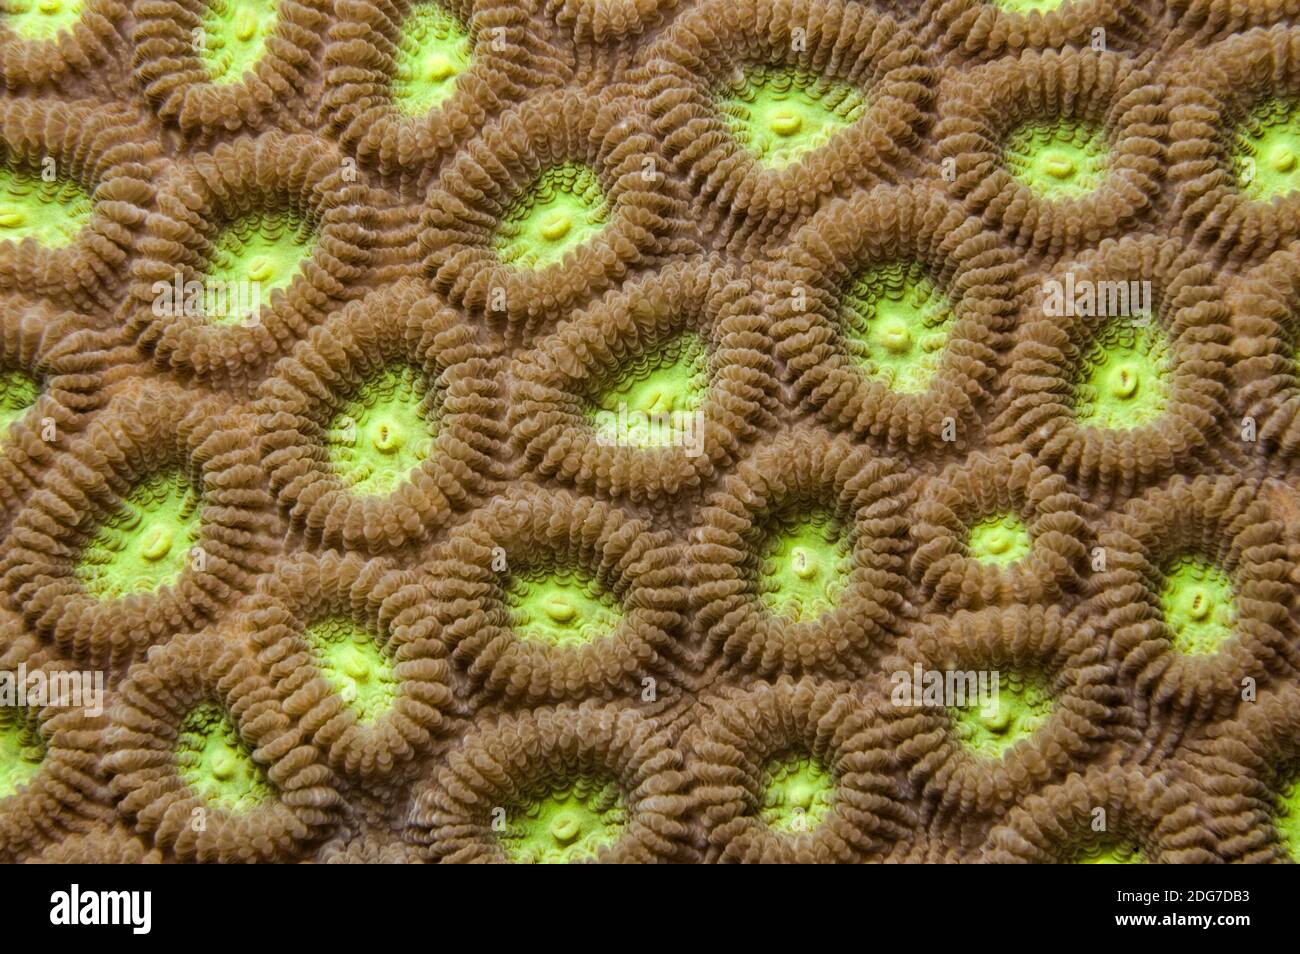 Two Colored Star Coral - Favia speciosa Stock Photo